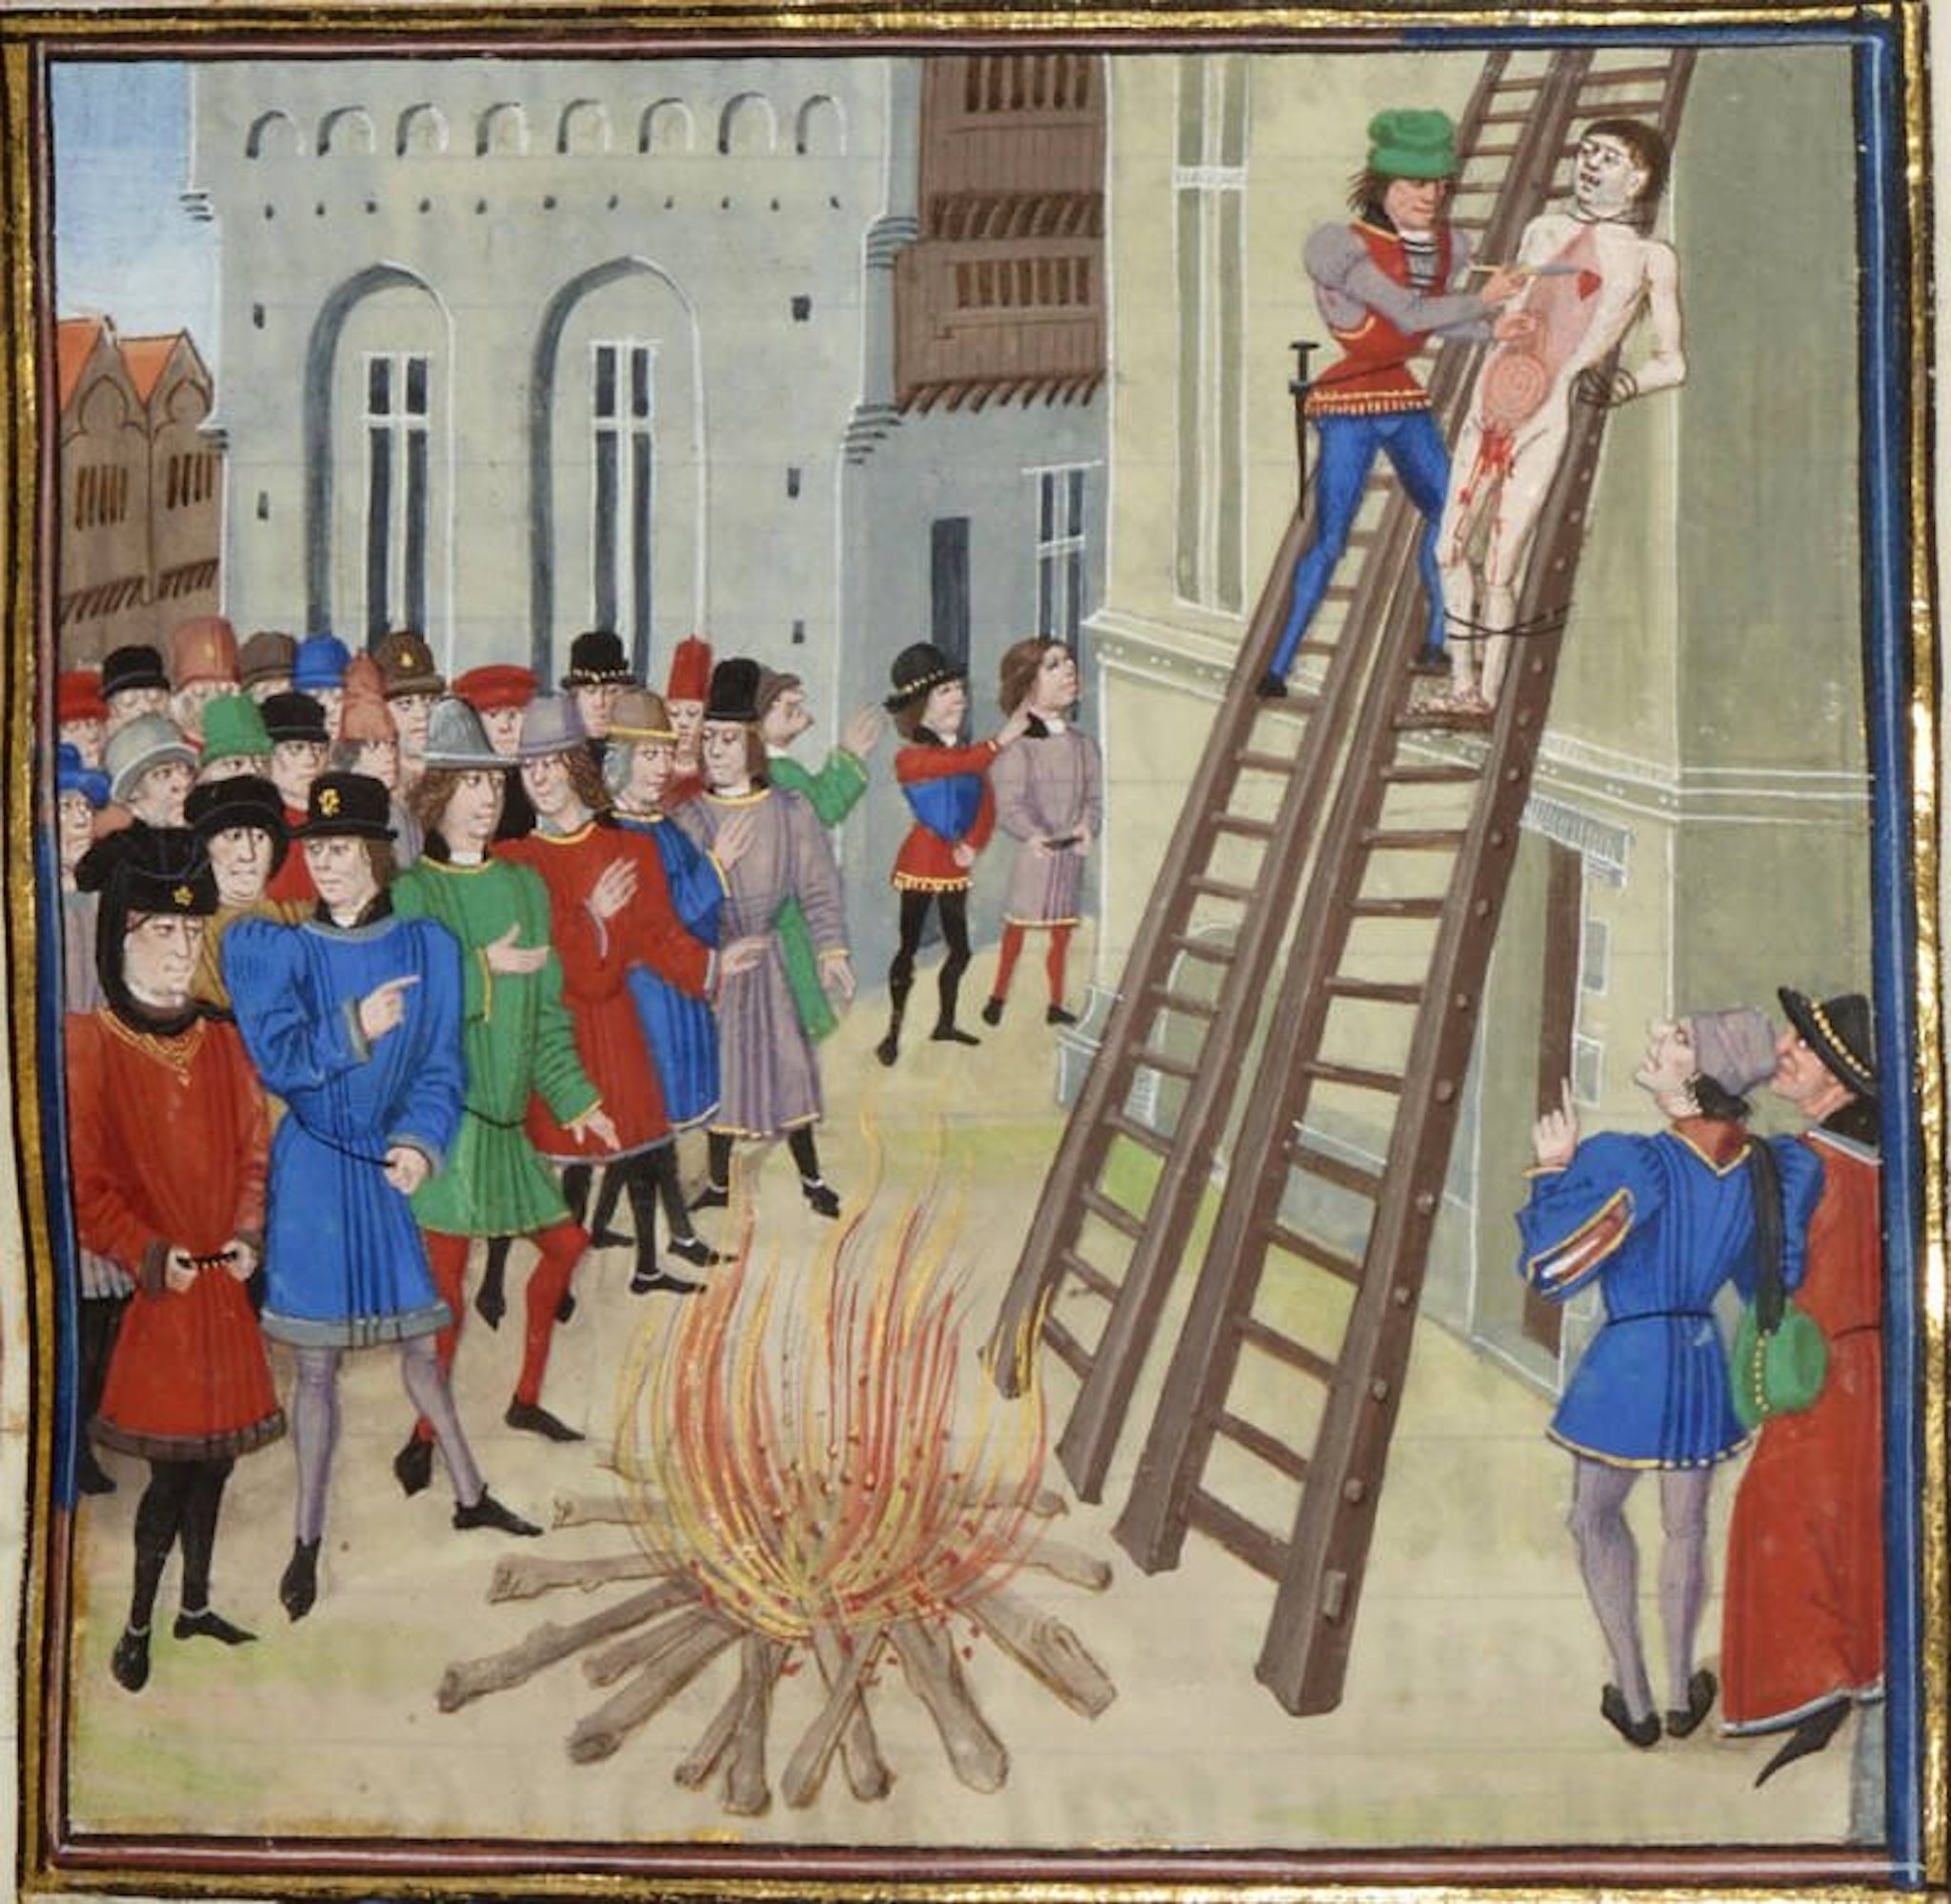 Hình Phạt Thời Trung Cổ: Sự Tàn Bạo và Các Biện Pháp Thay Đổi